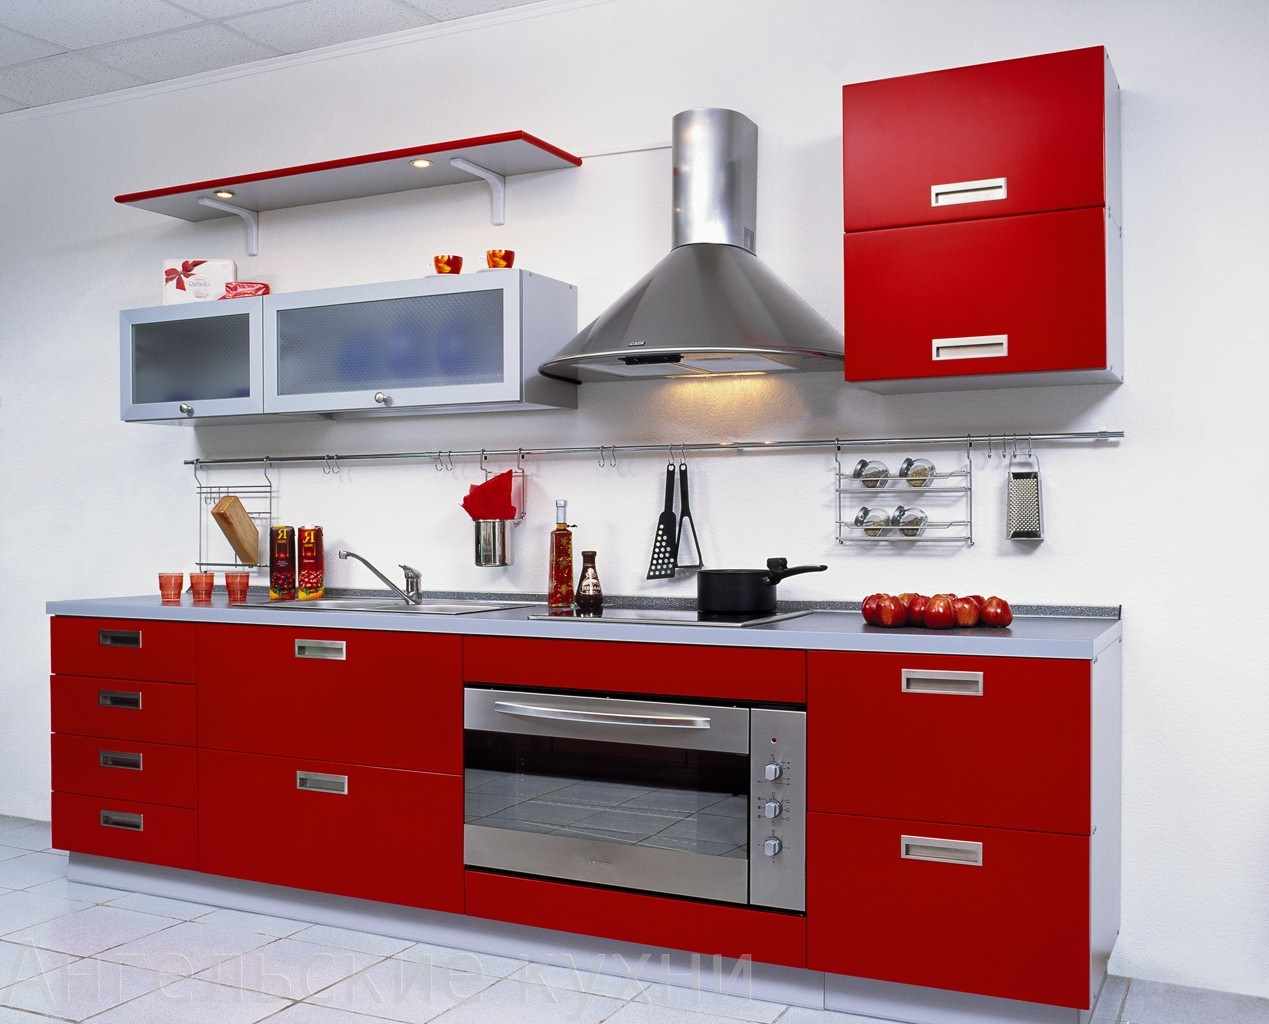 مثال على تصميم غير عادي للمطبخ الأحمر